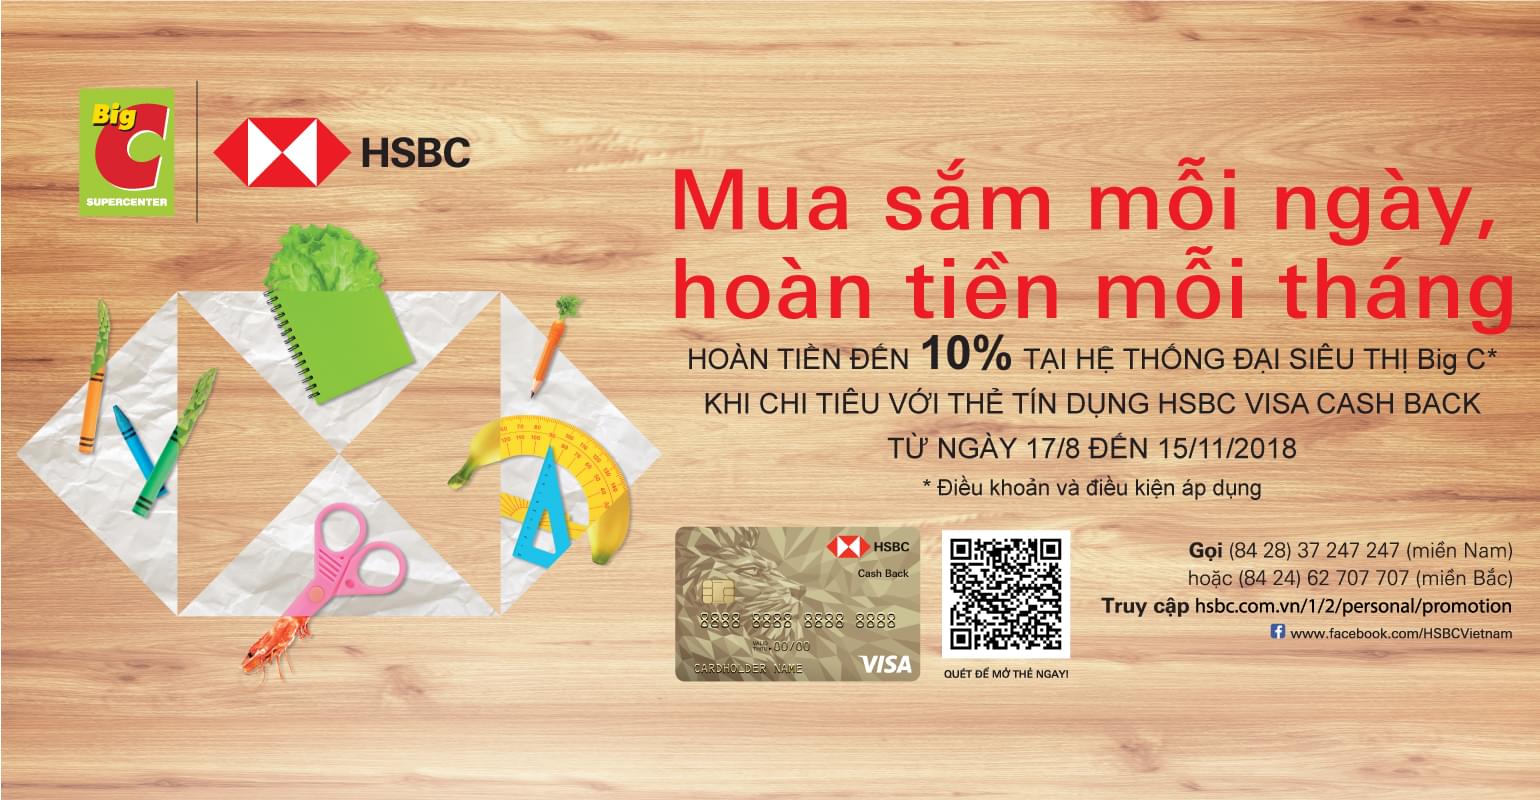 Hoàn tiền đến 10% cho chủ thẻ HSBC khi mua sắm tại Big C